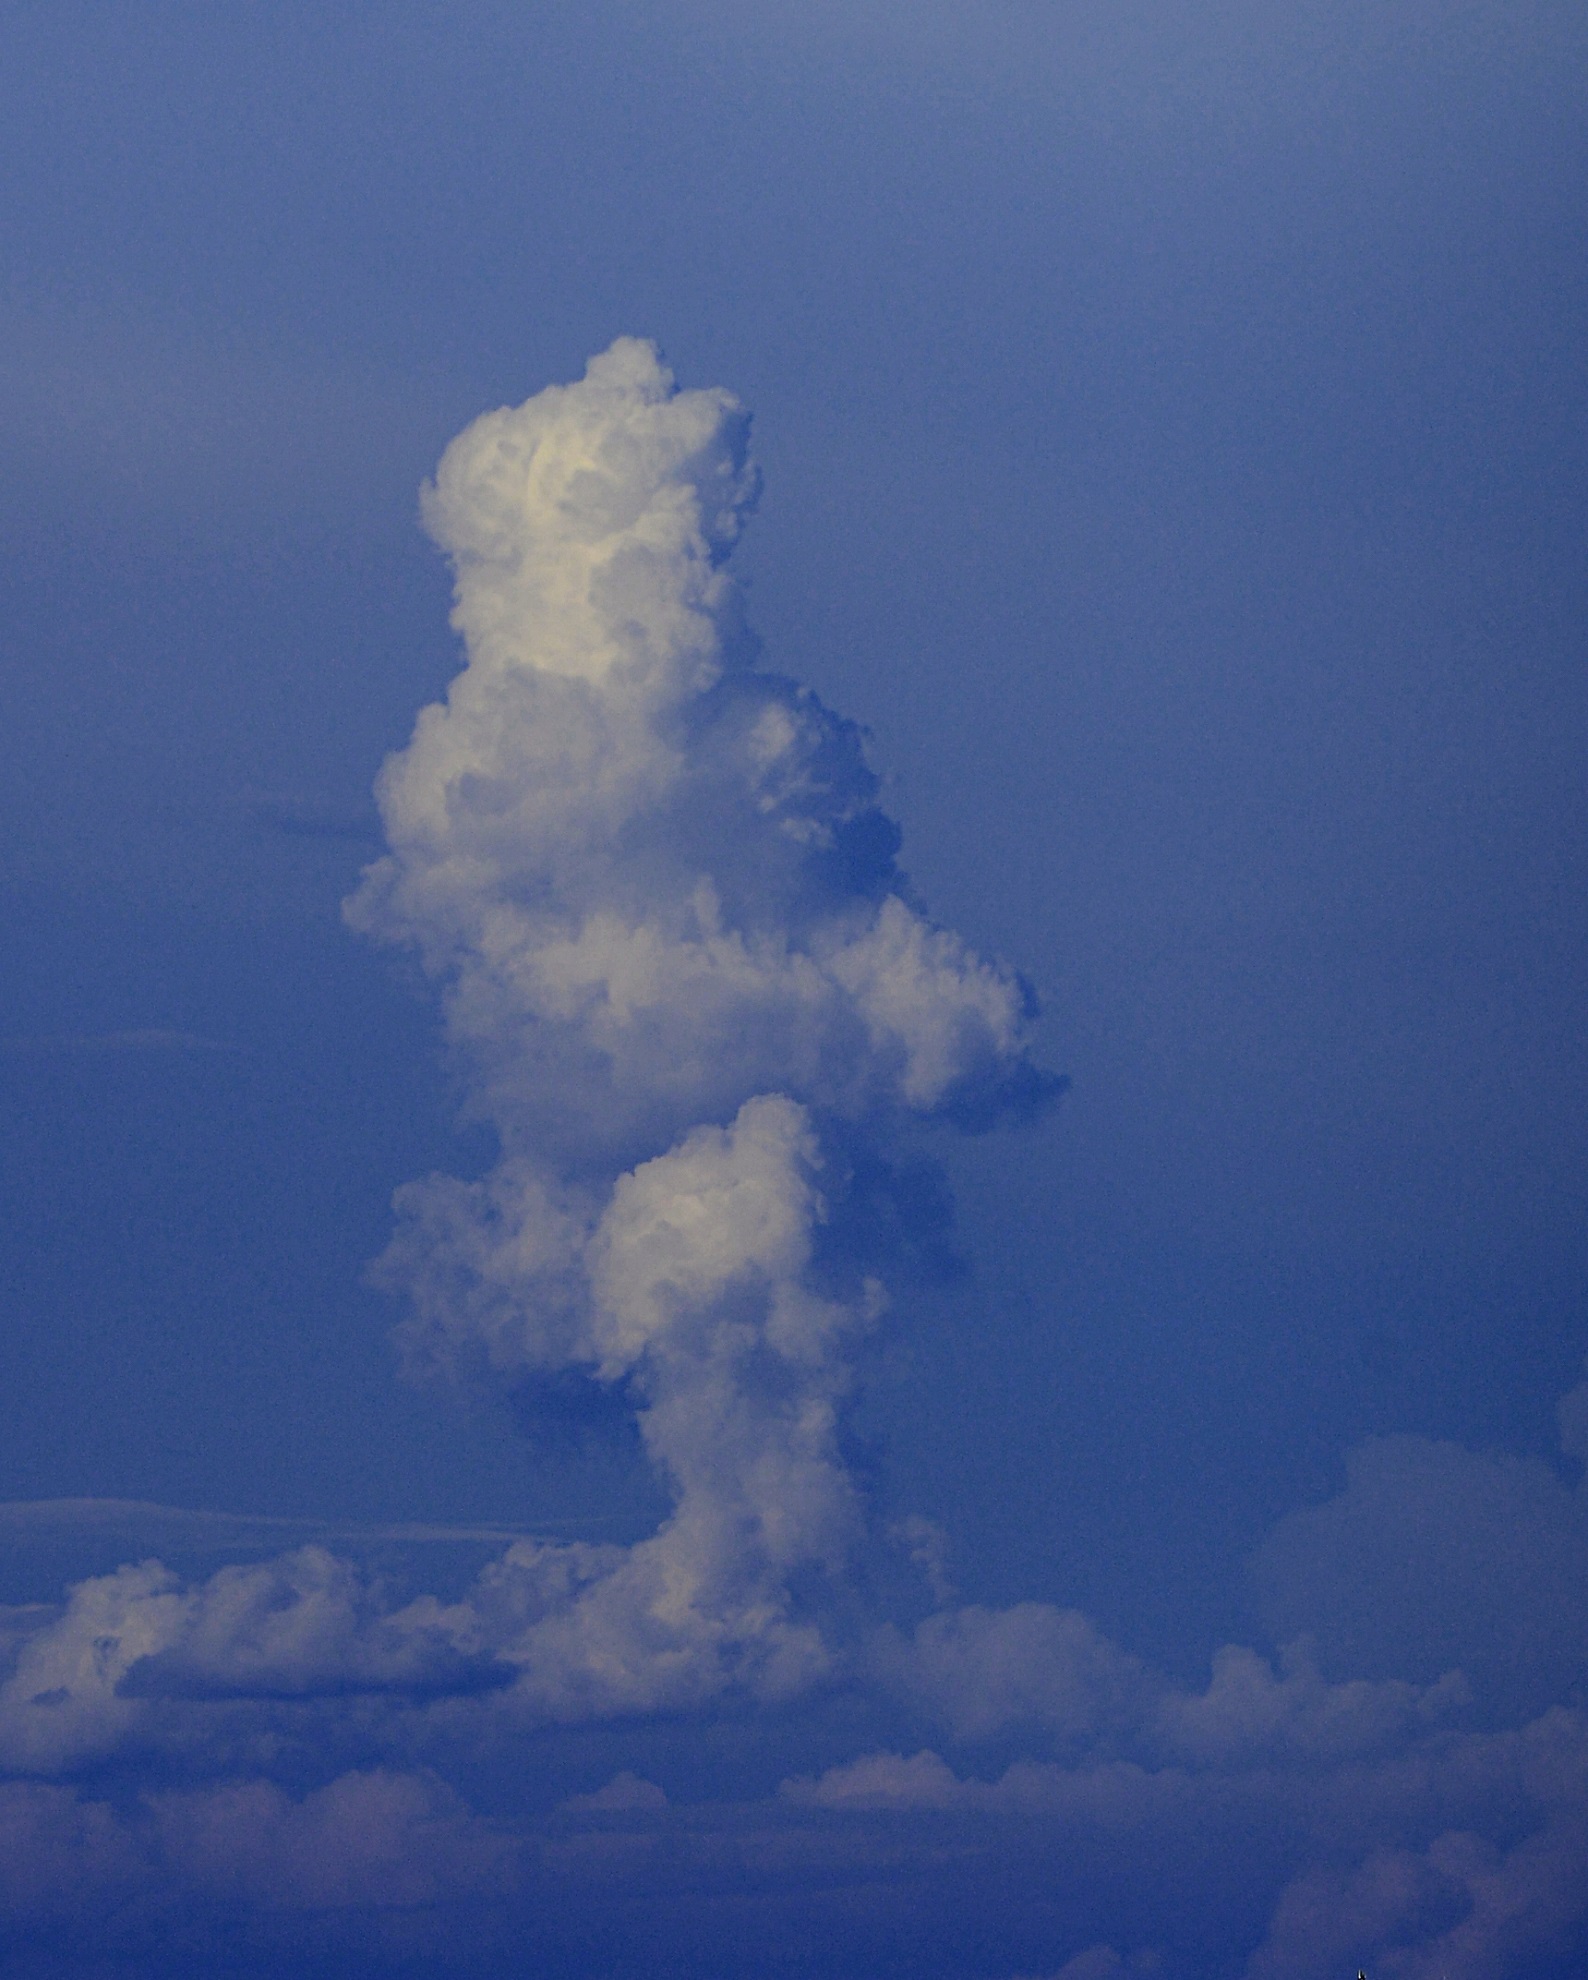 The Samurai Cloud...